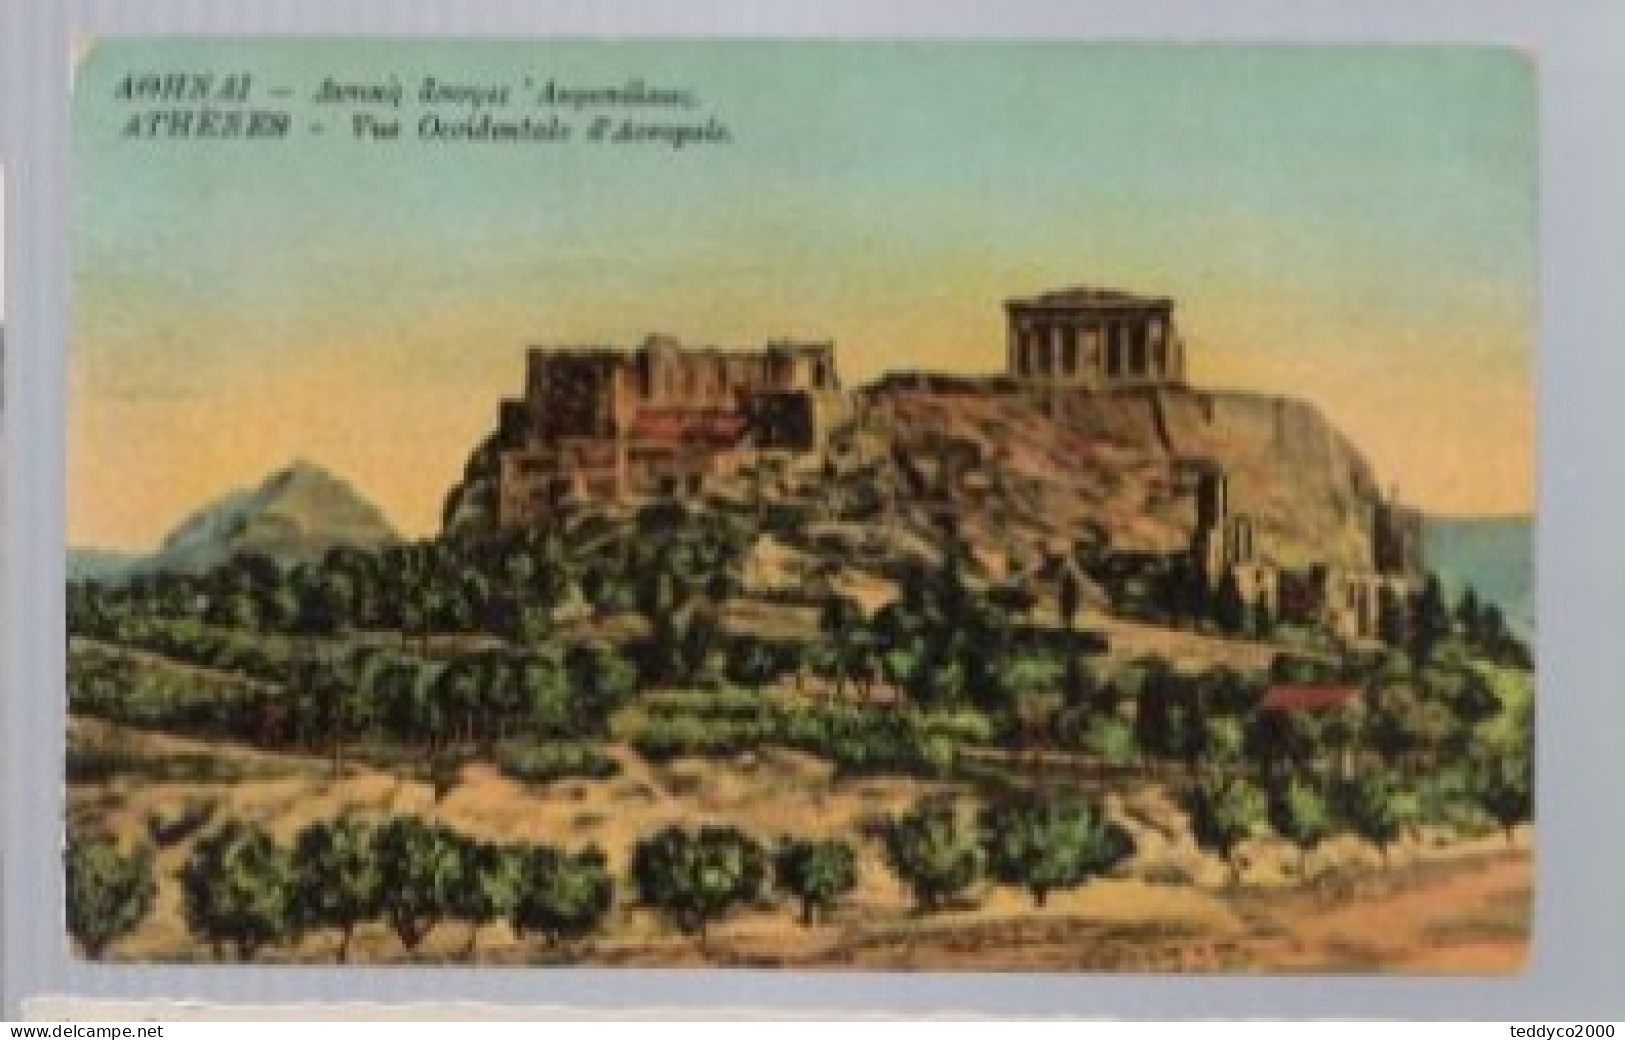 ATHENES Vue Occidentale De L'Acropole 1916 - Griechenland